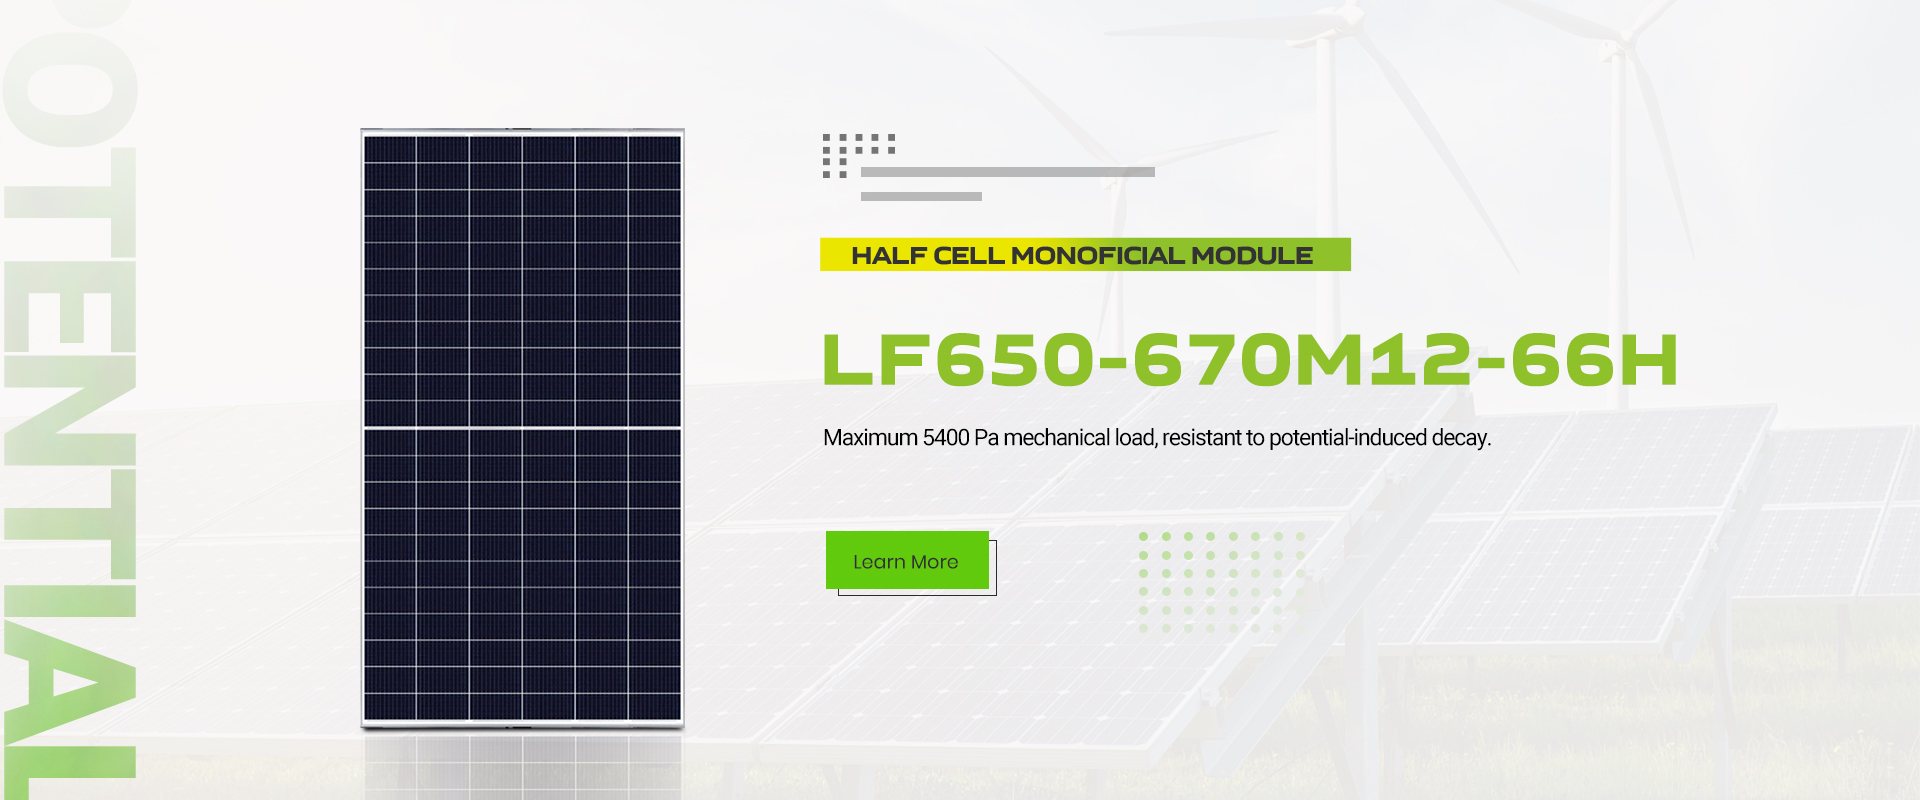 lefeng-көтерме-жоғары-тиімді-132-жартылай-клетка-бифациалды-күн-модуль-645-670w-монокристалды-кремний-фотоэлектрлік-модуль-210мм-күн панелі-өнім